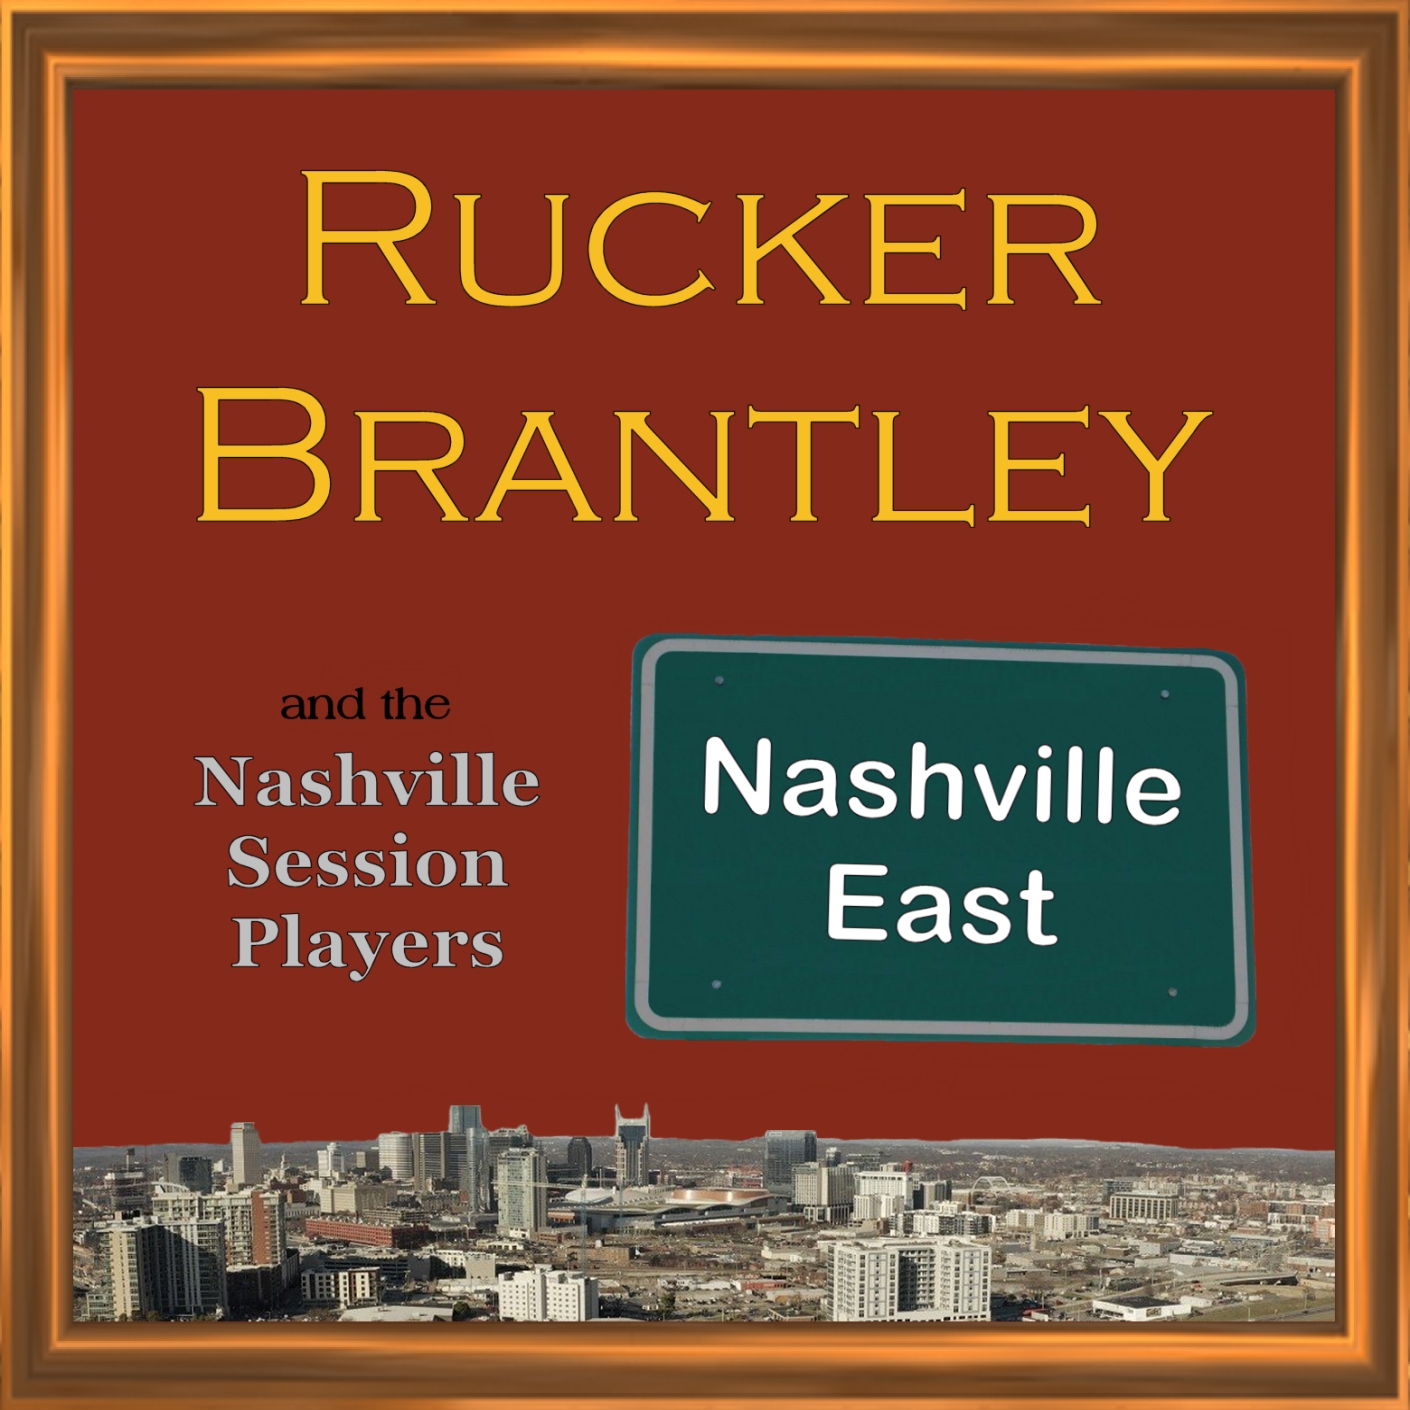 NASHVILLE EAST
Rucker Brantley
CD Cover